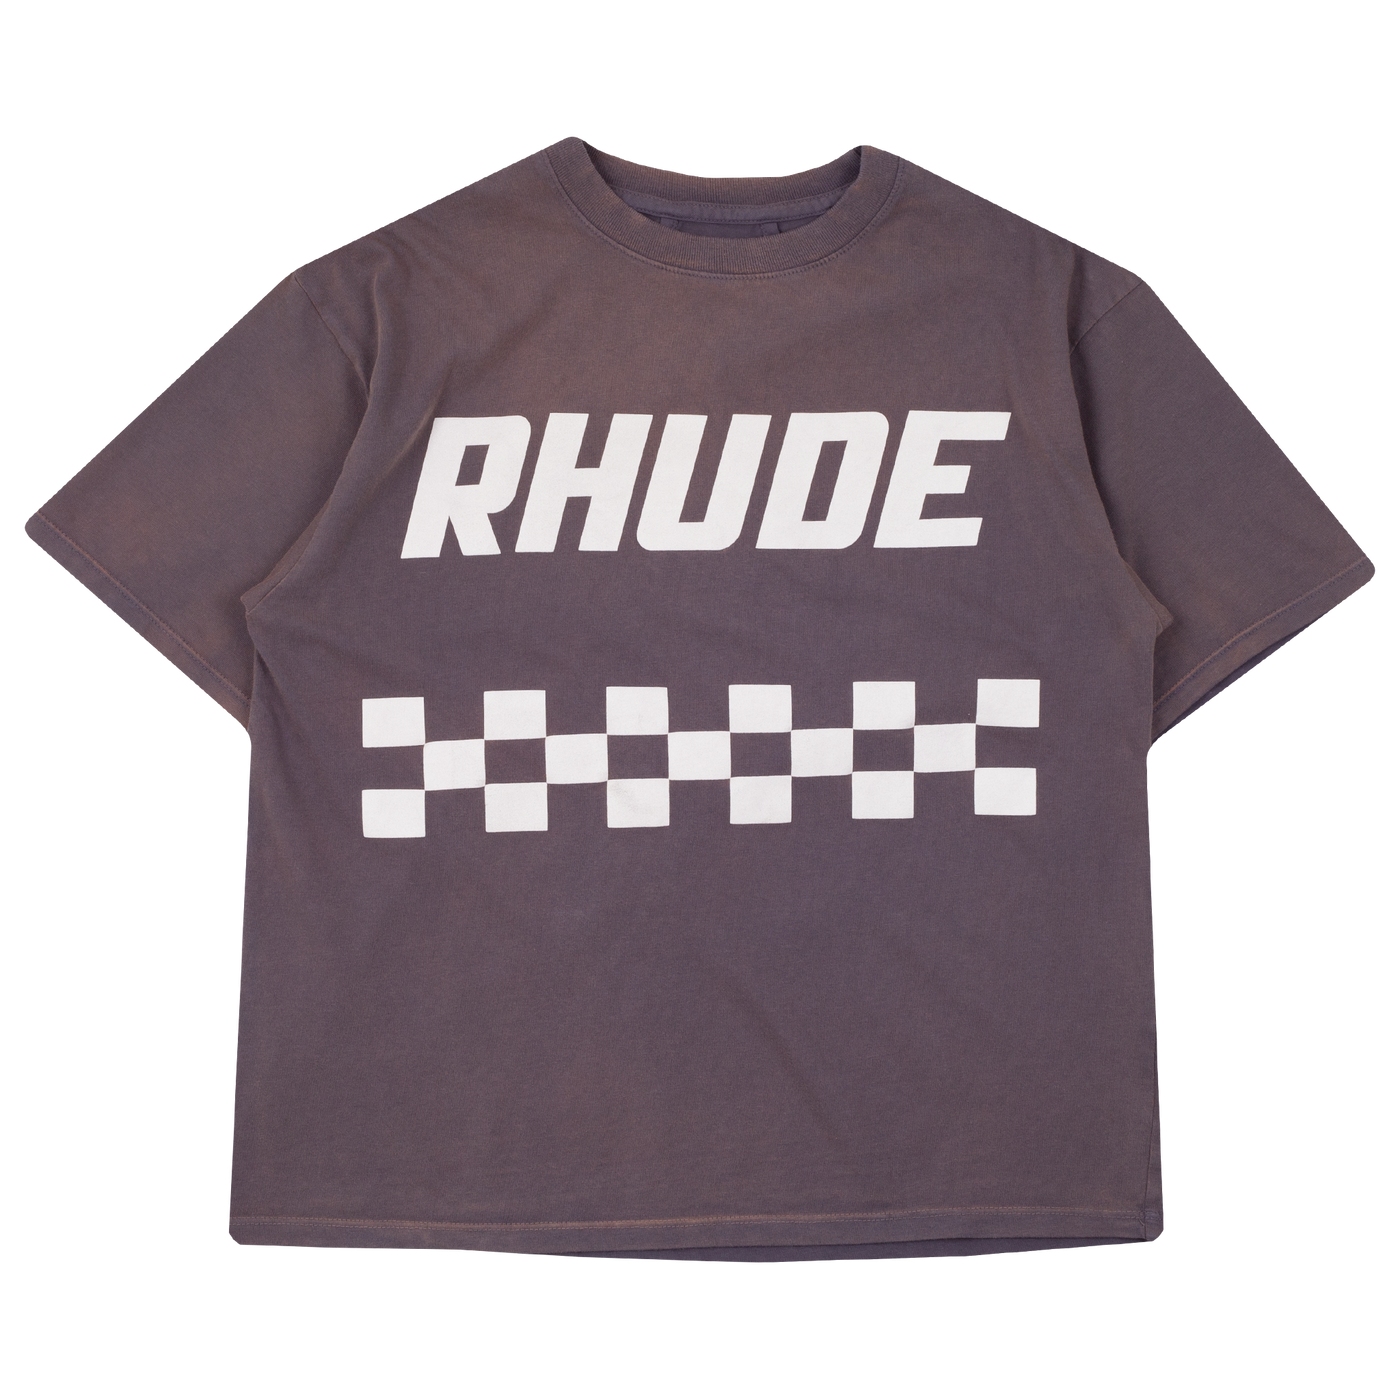 RHUDE OFF ROAD TEE